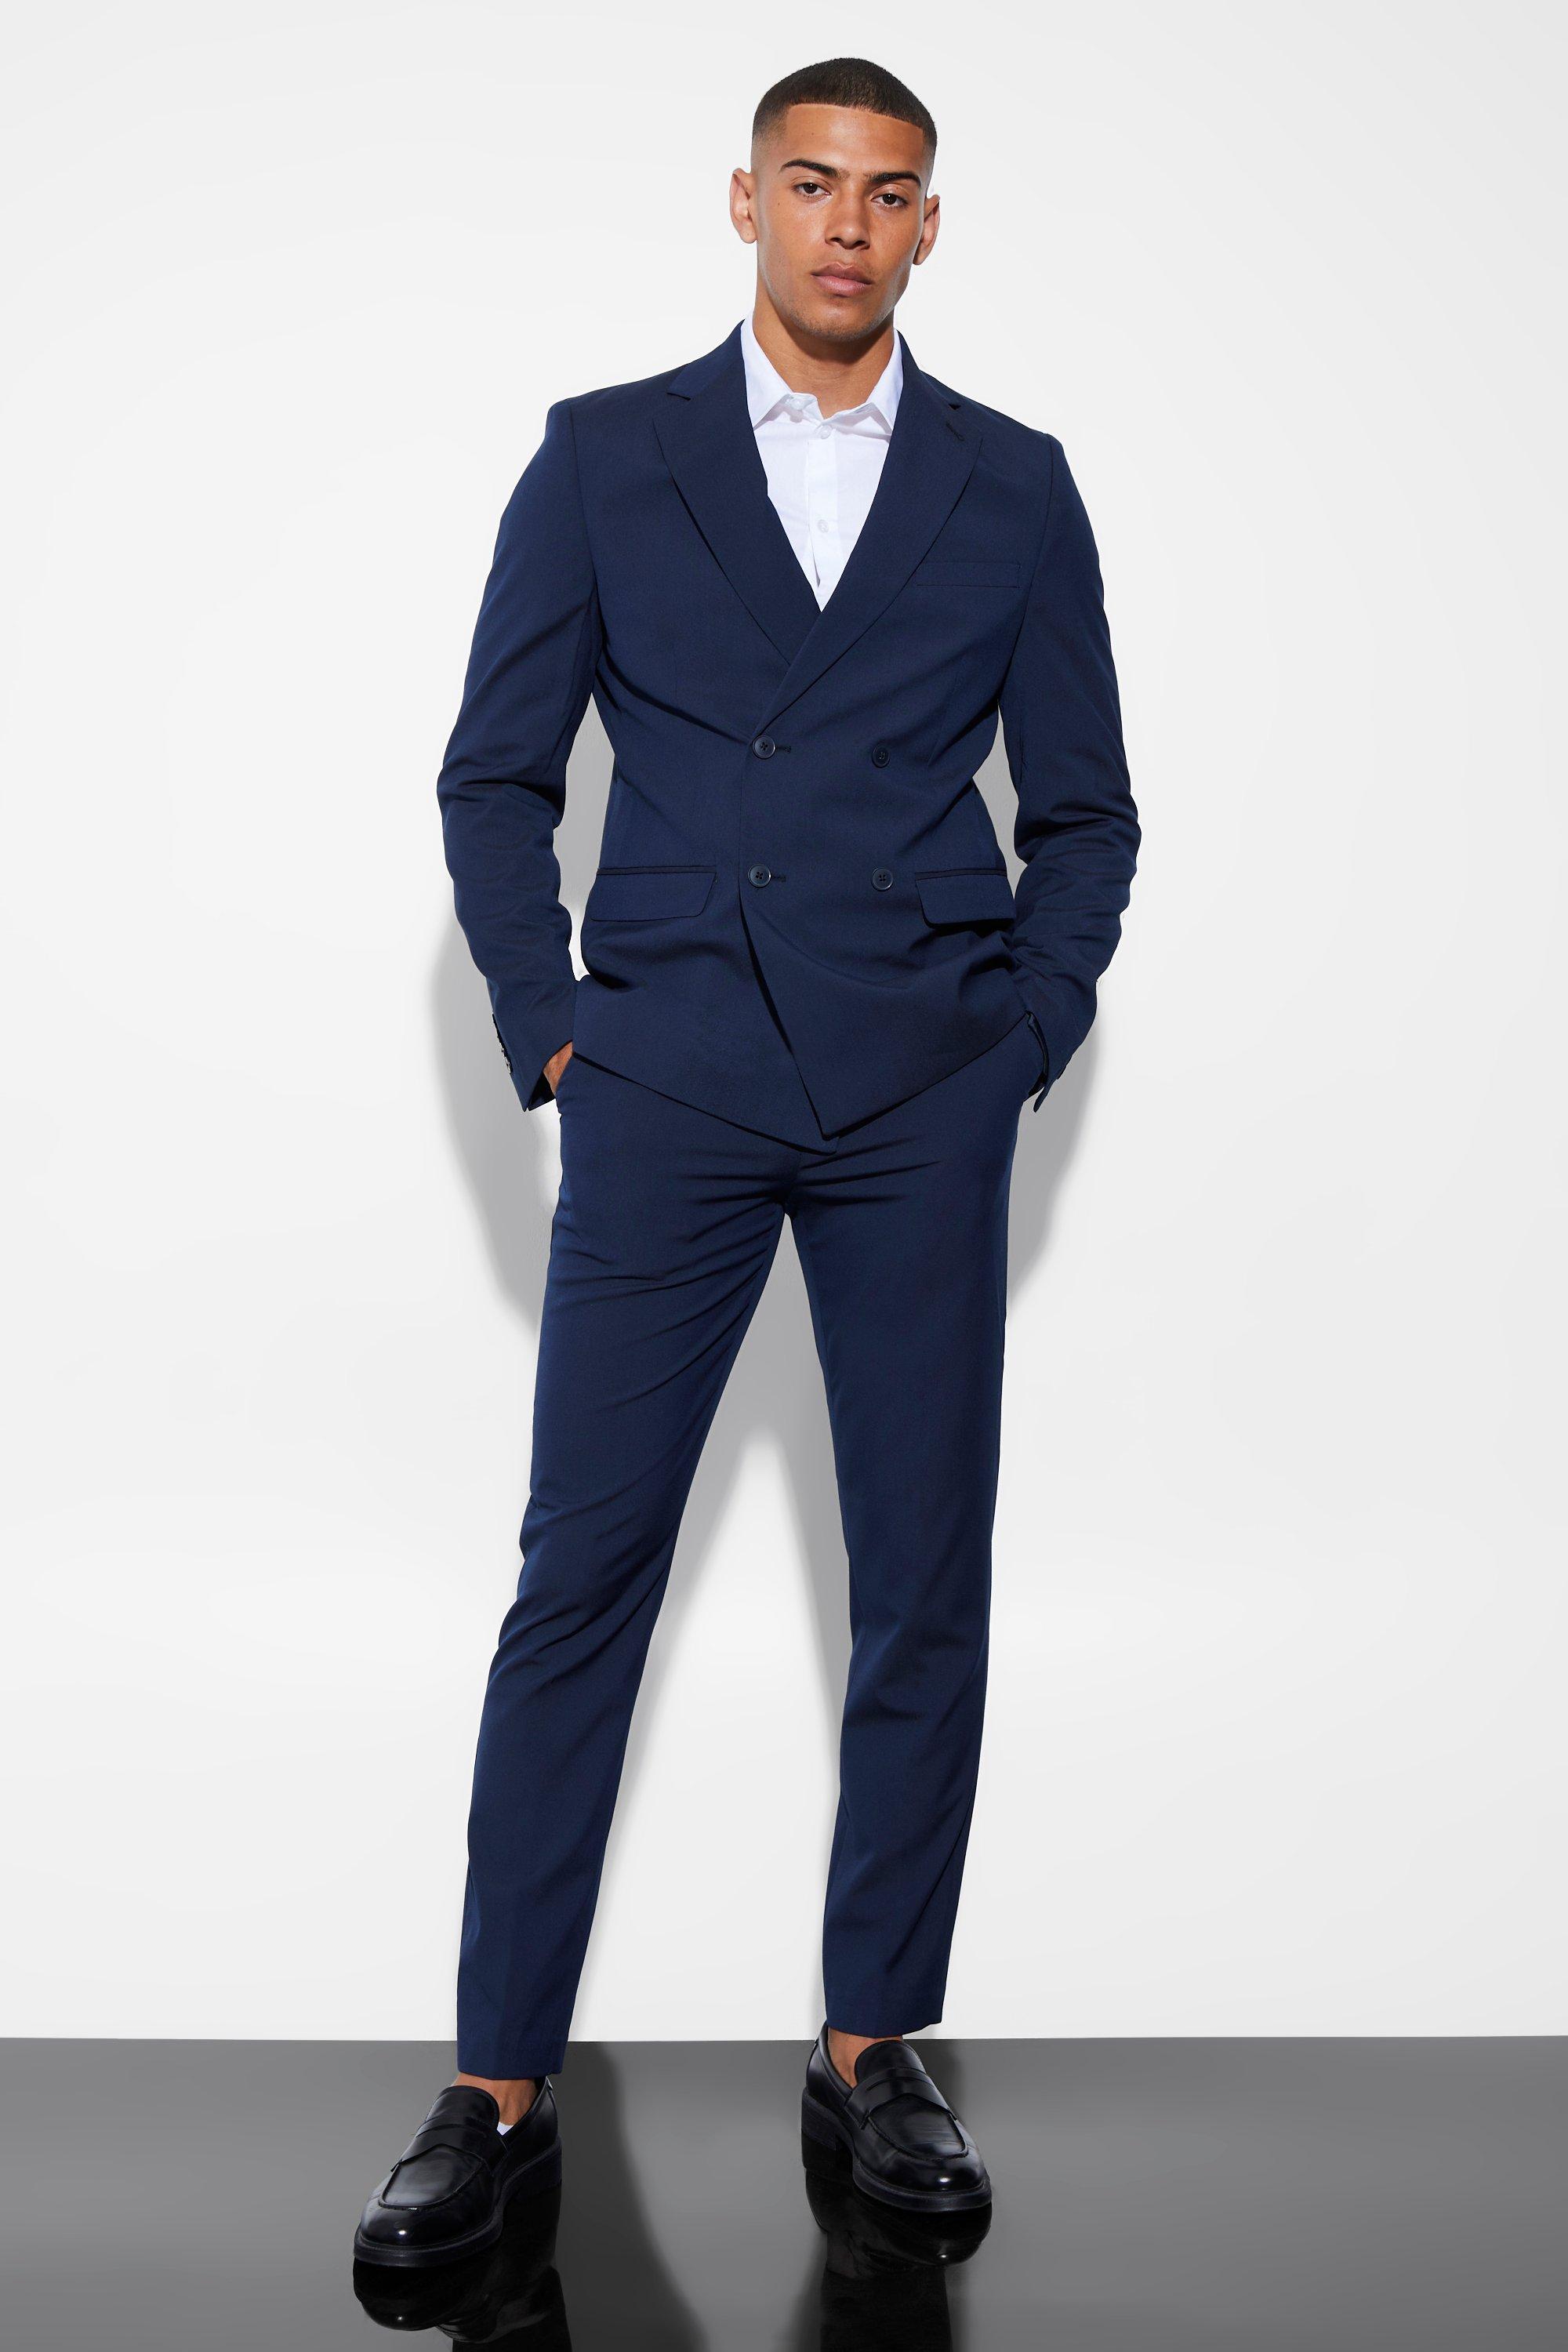 Express Slim Plaid Knit Suit Jacket Multi-Color Men's 42 Short